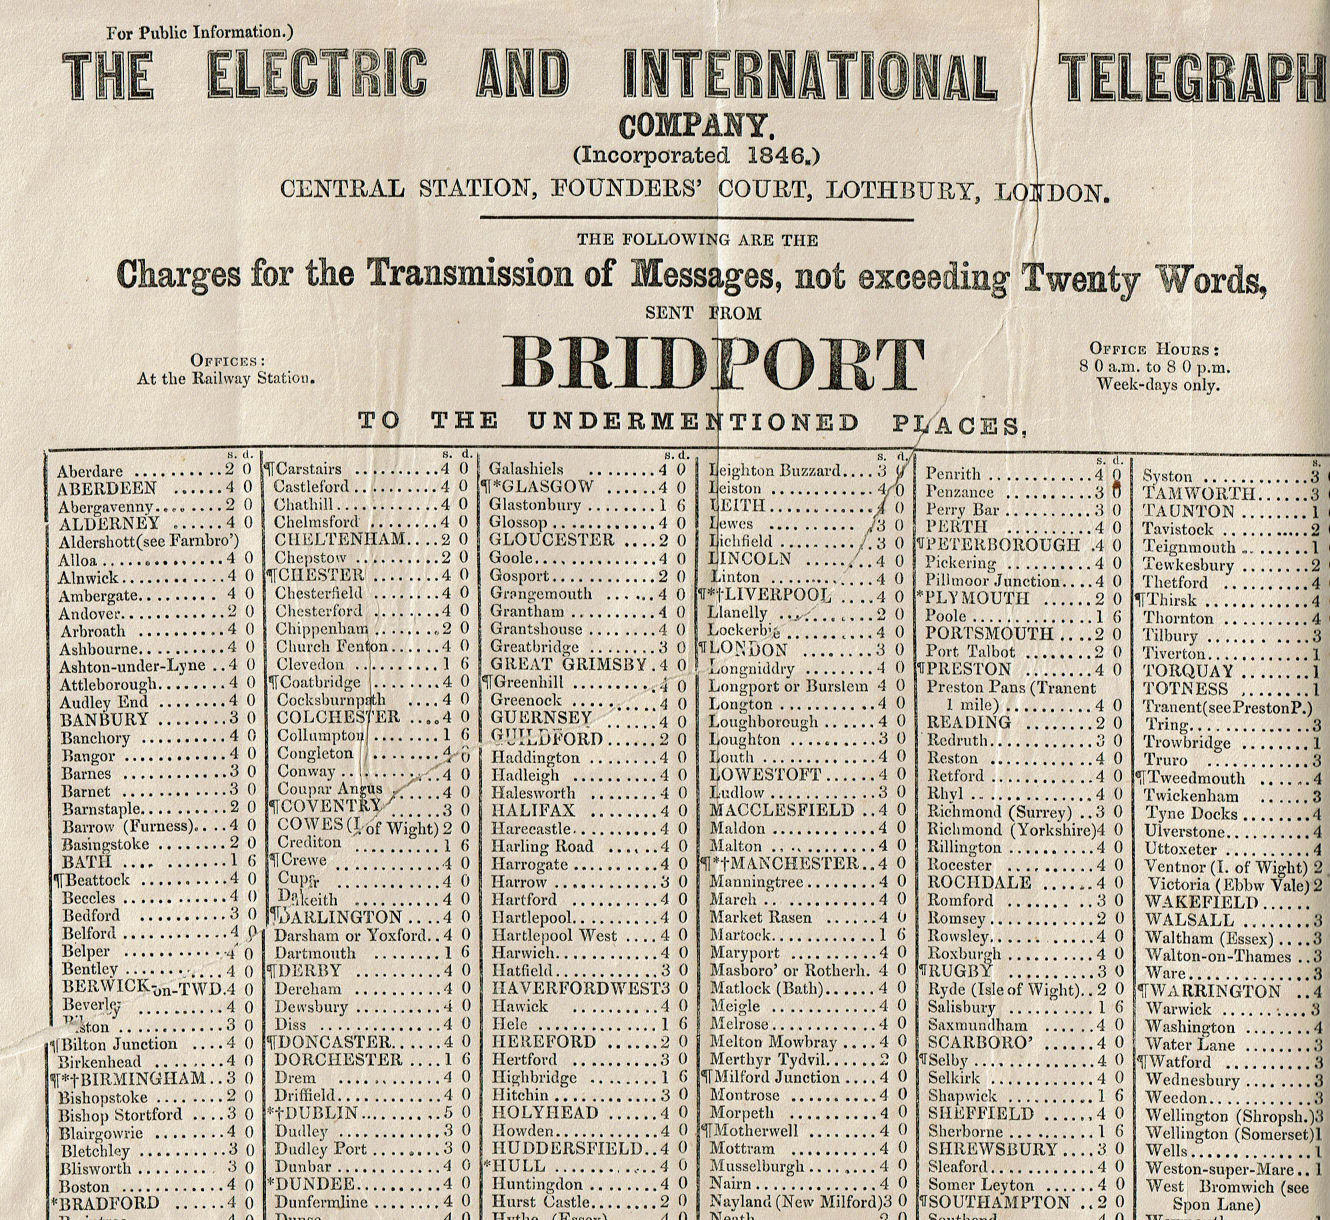 ET Bridport telegraph tariff